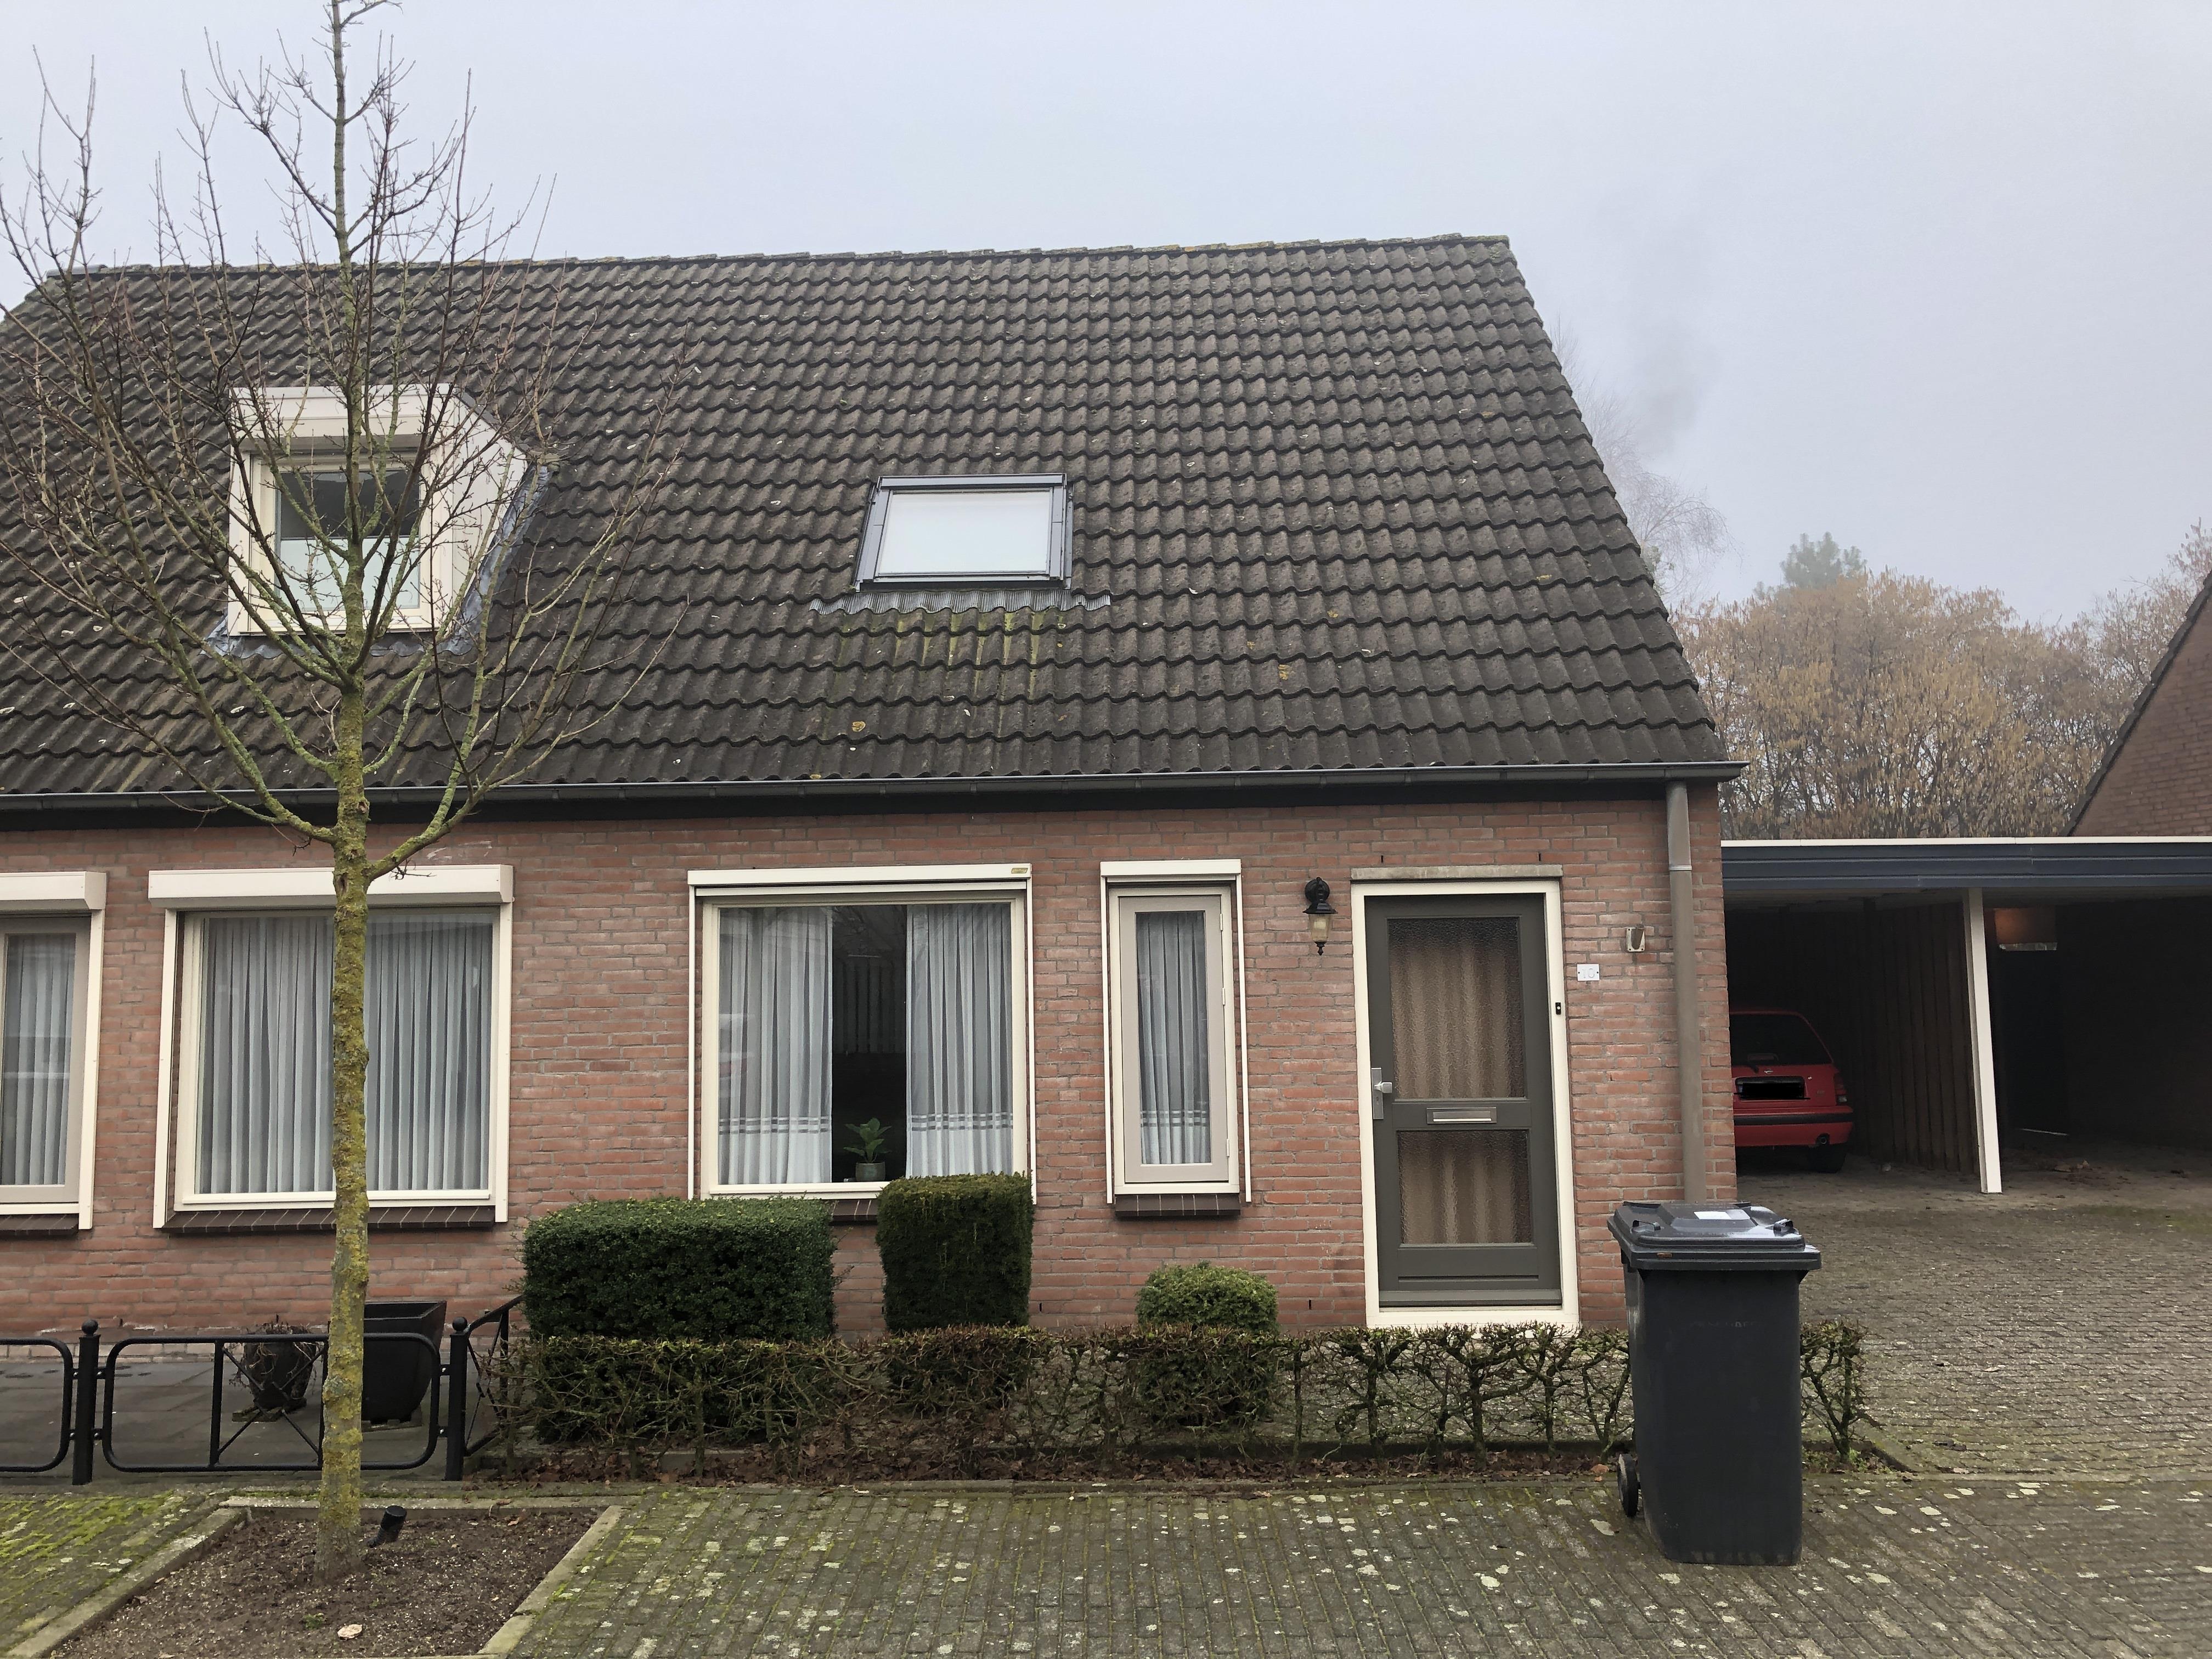 Pauwkesstraat 10, 5298 TW Liempde, Nederland